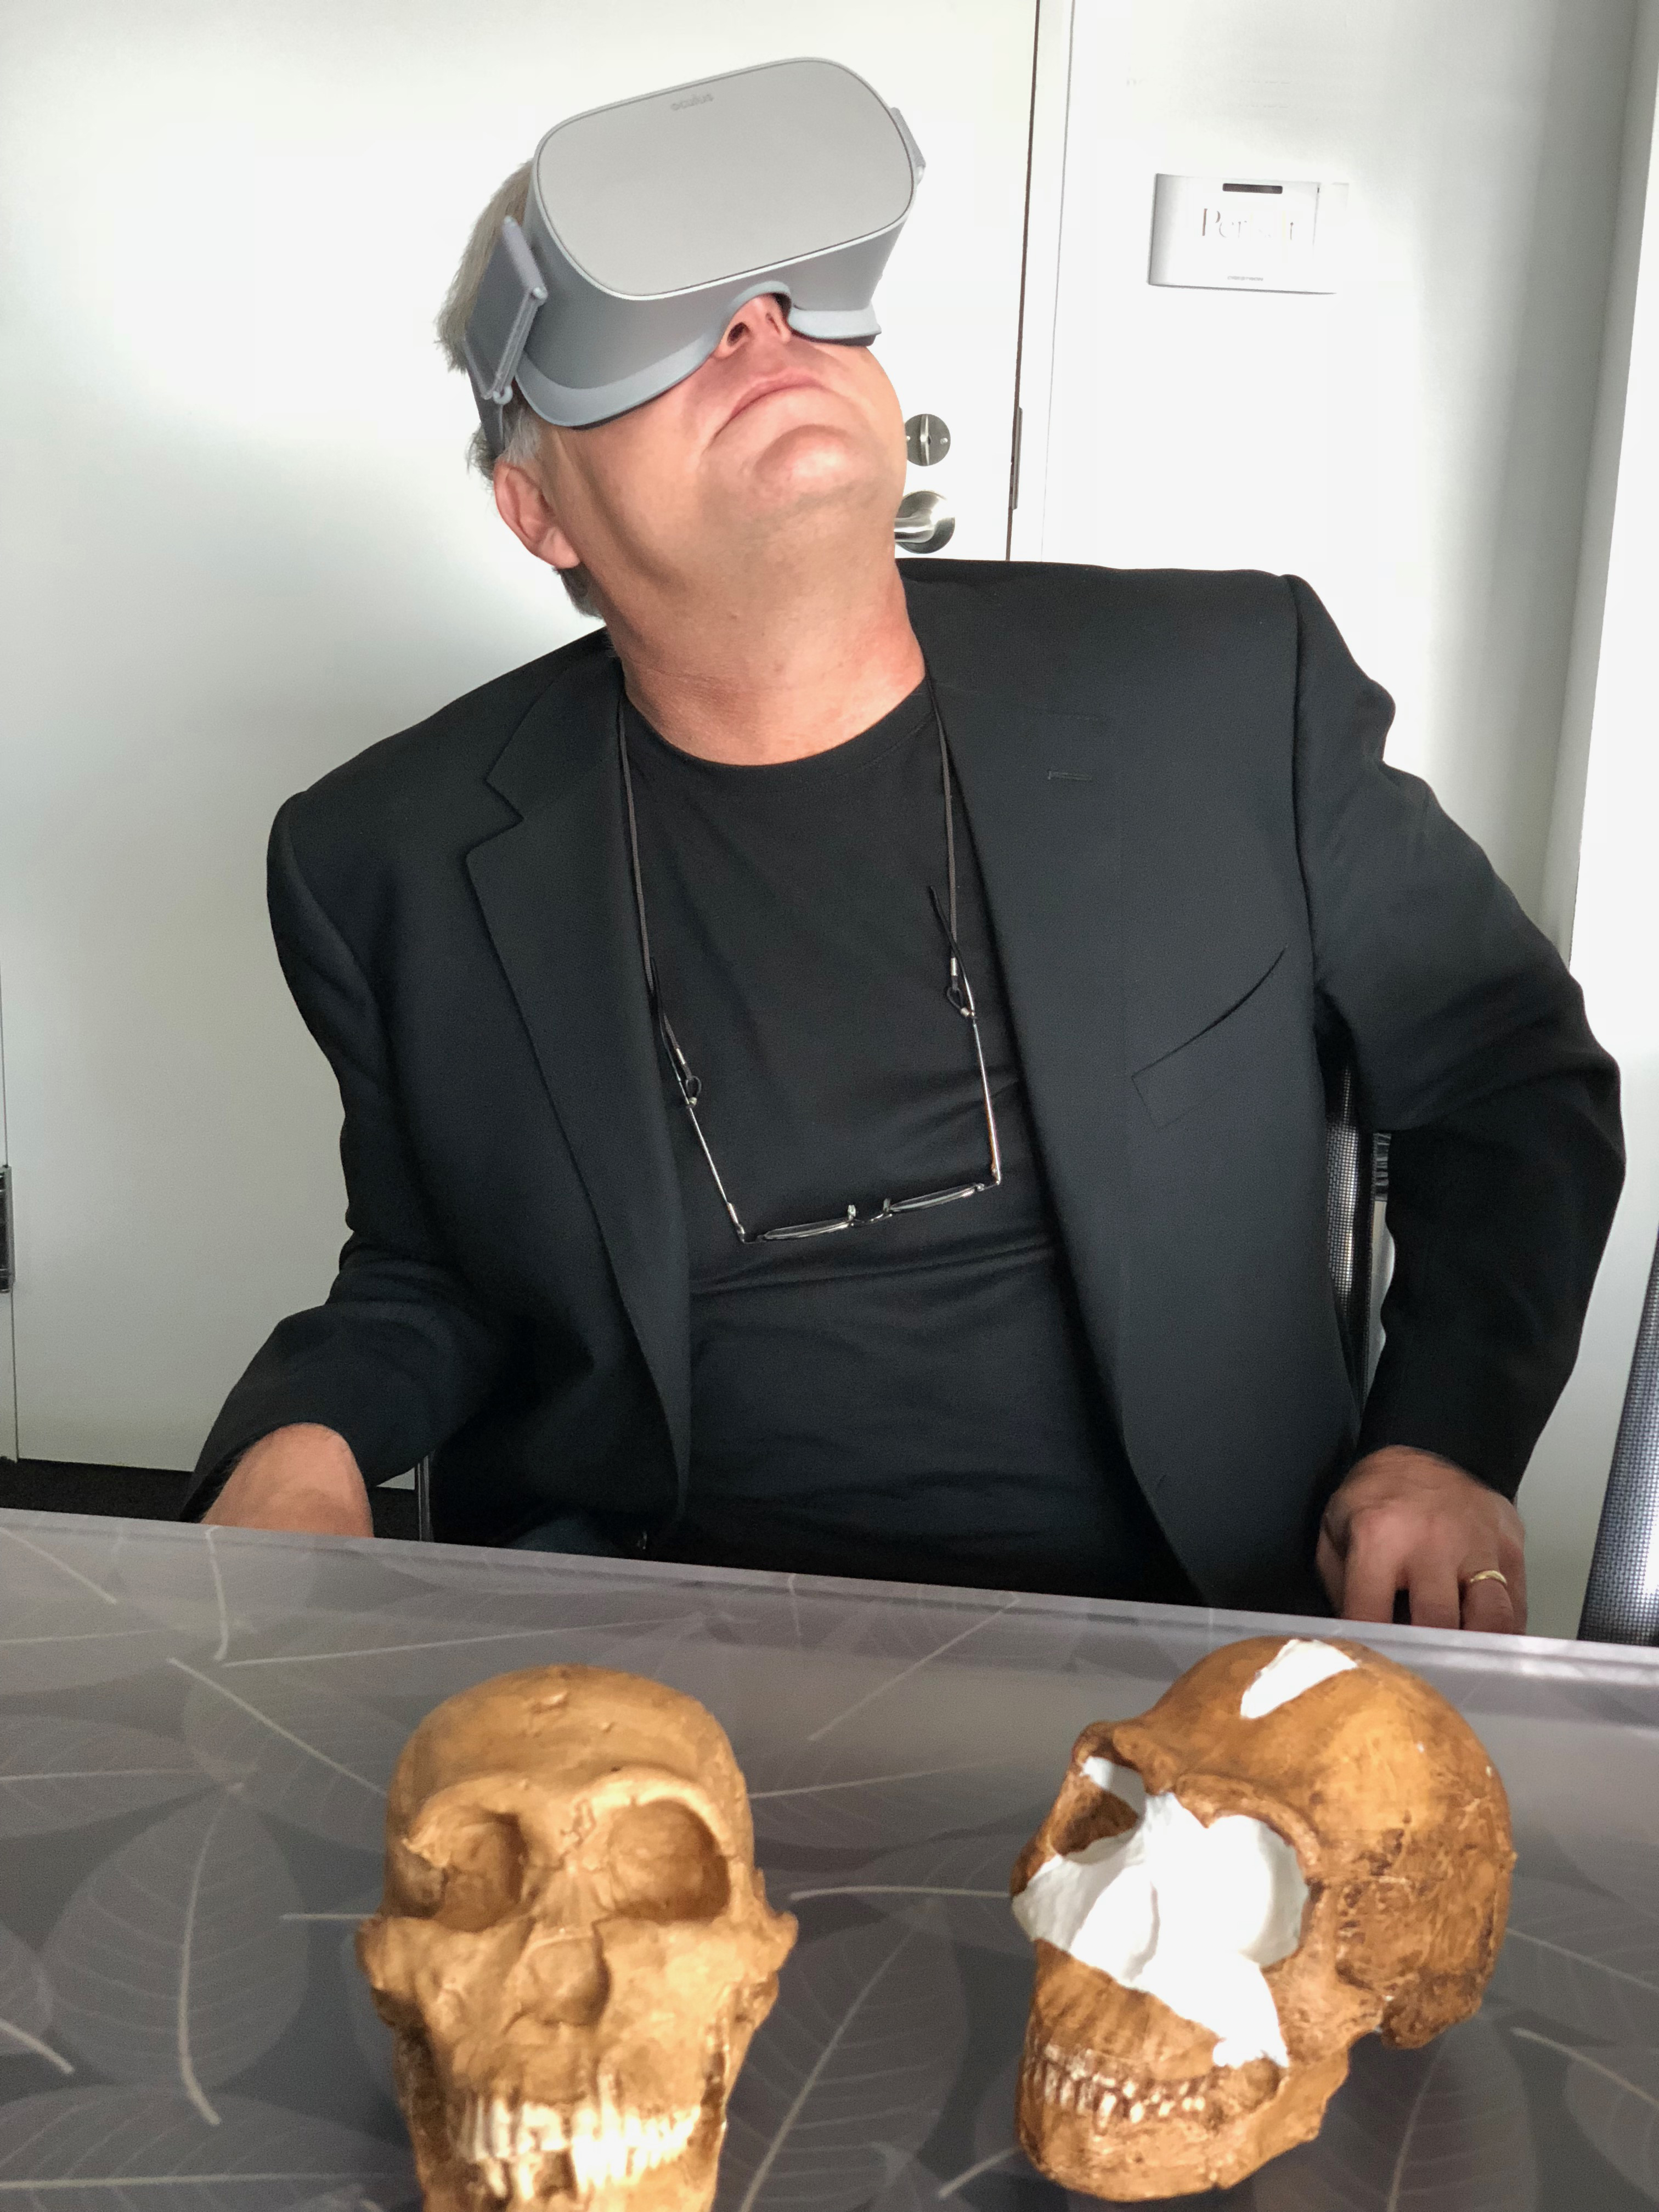 Dr. Lee Berger Oculus Go VR